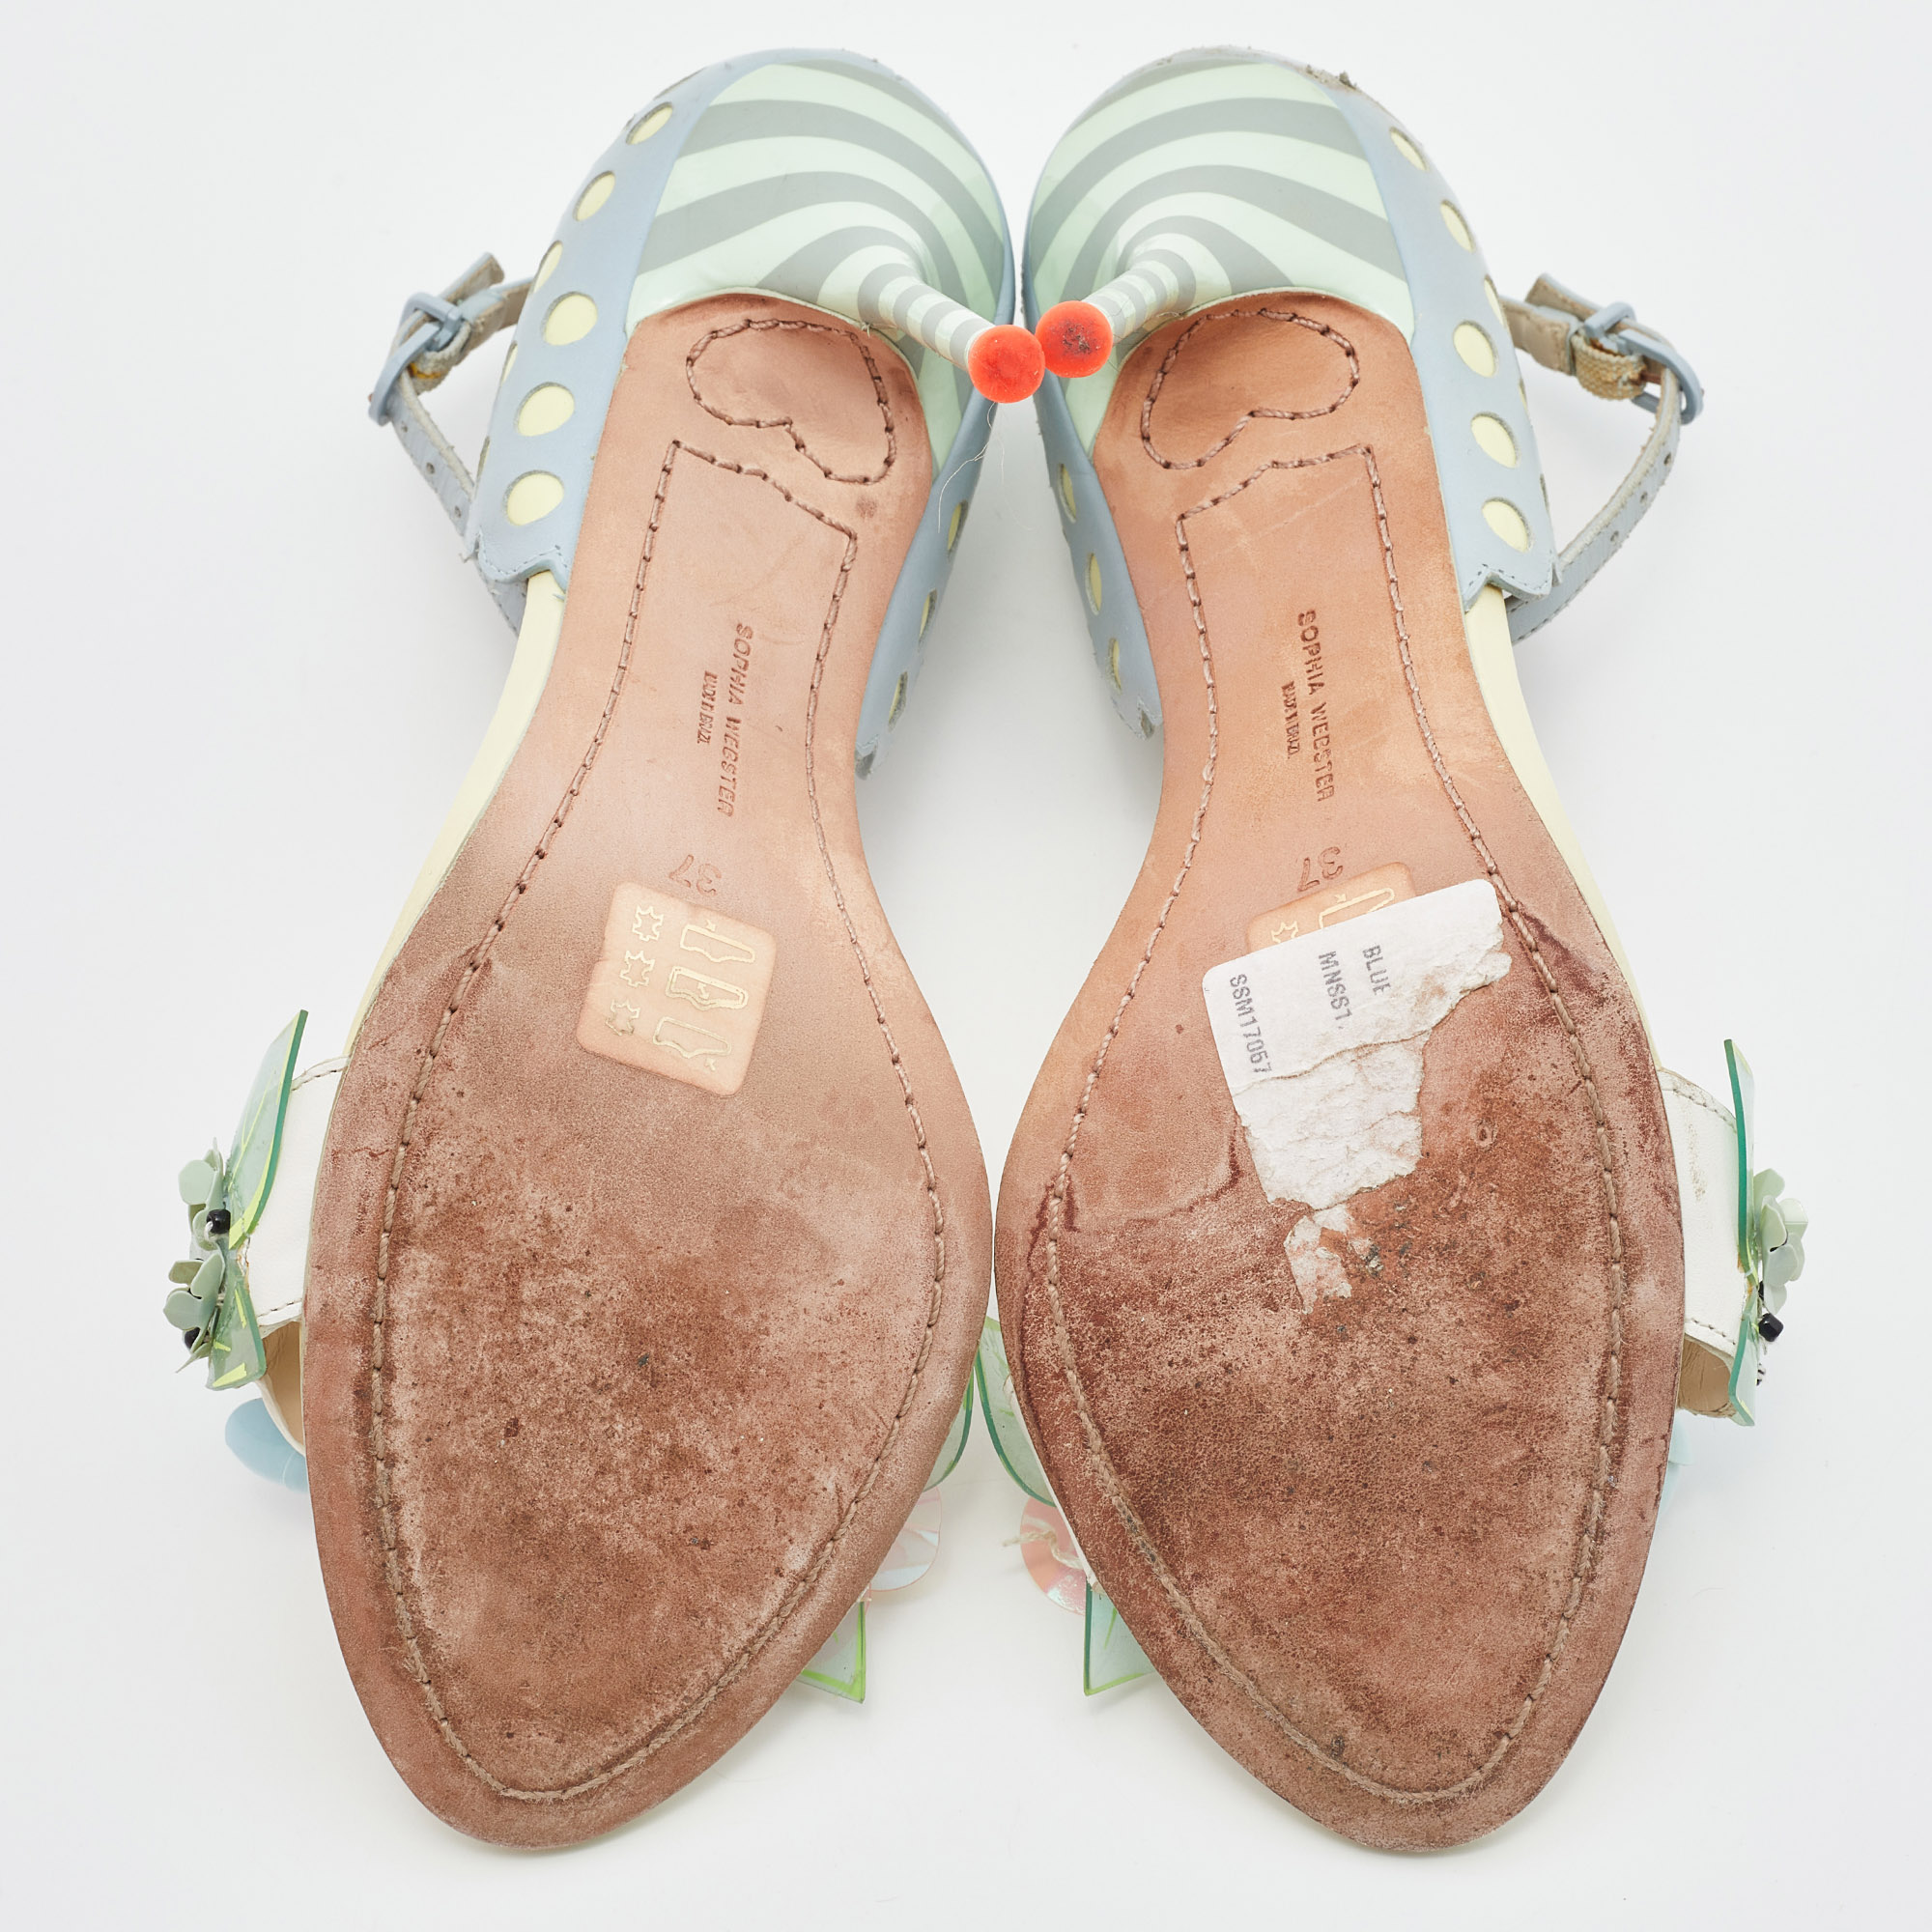 Sophia Webster Multicolor Leather Lilico Floral Embellished Ankle Strap Sandals Size 37